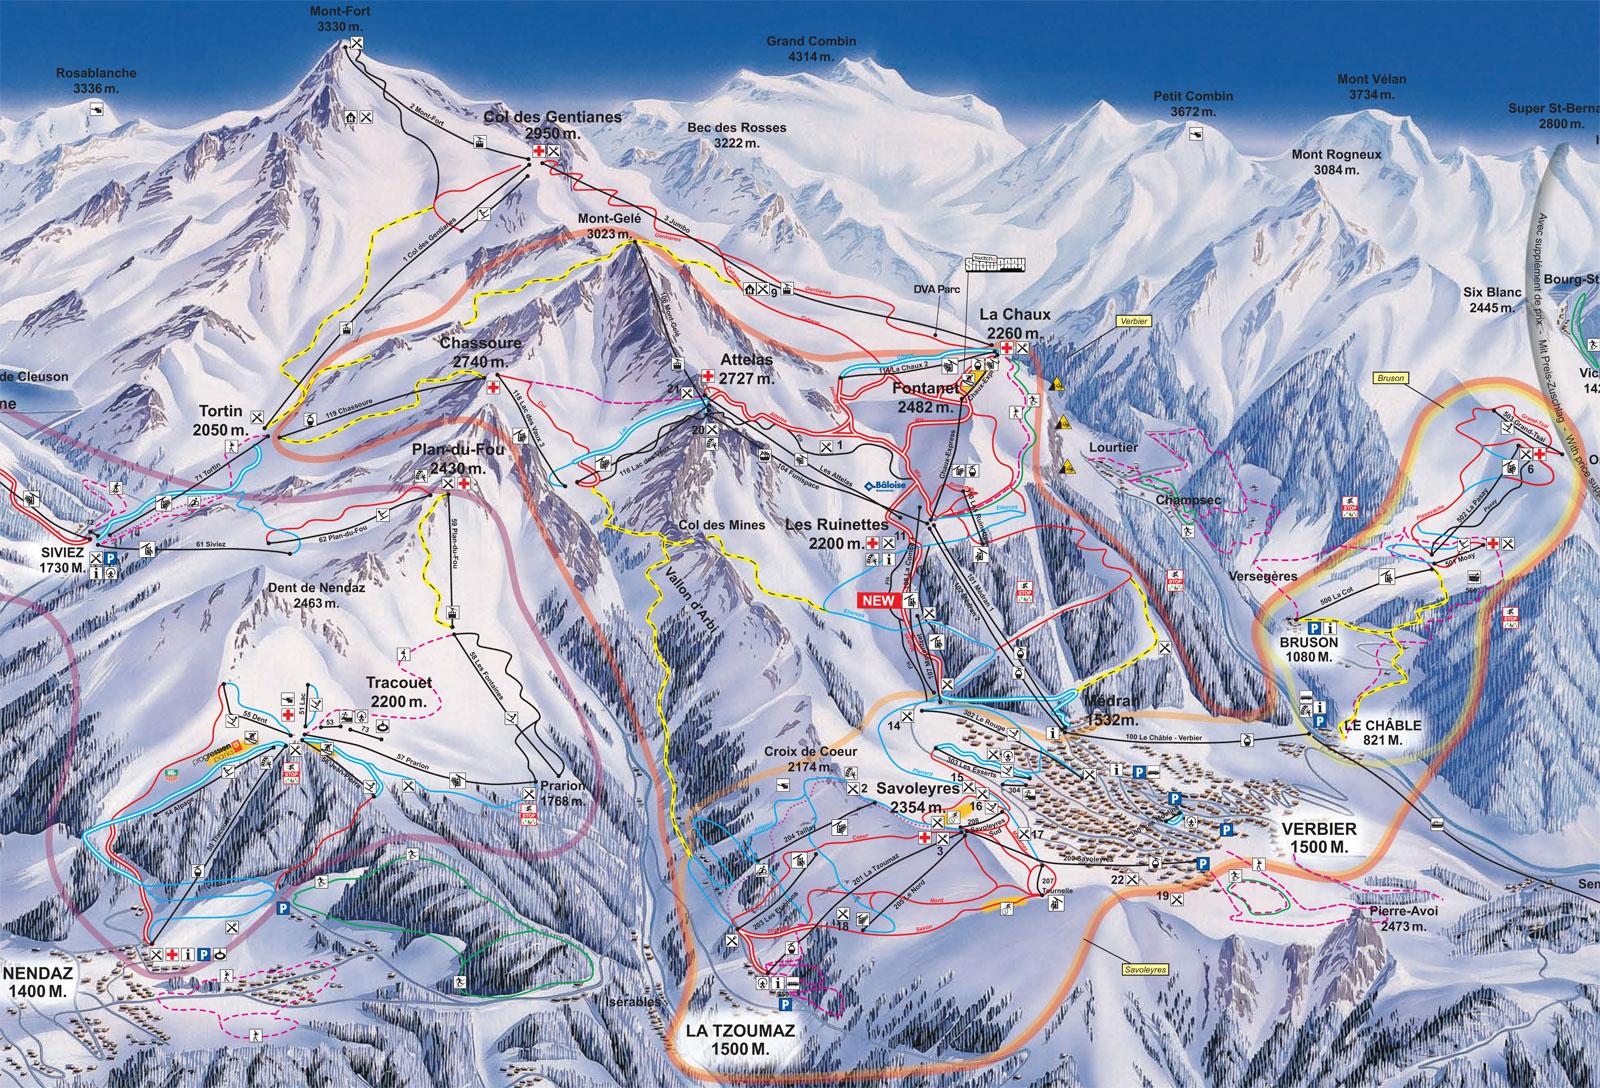 Verbier Piste Map J2ski regarding How To Ski Verbier